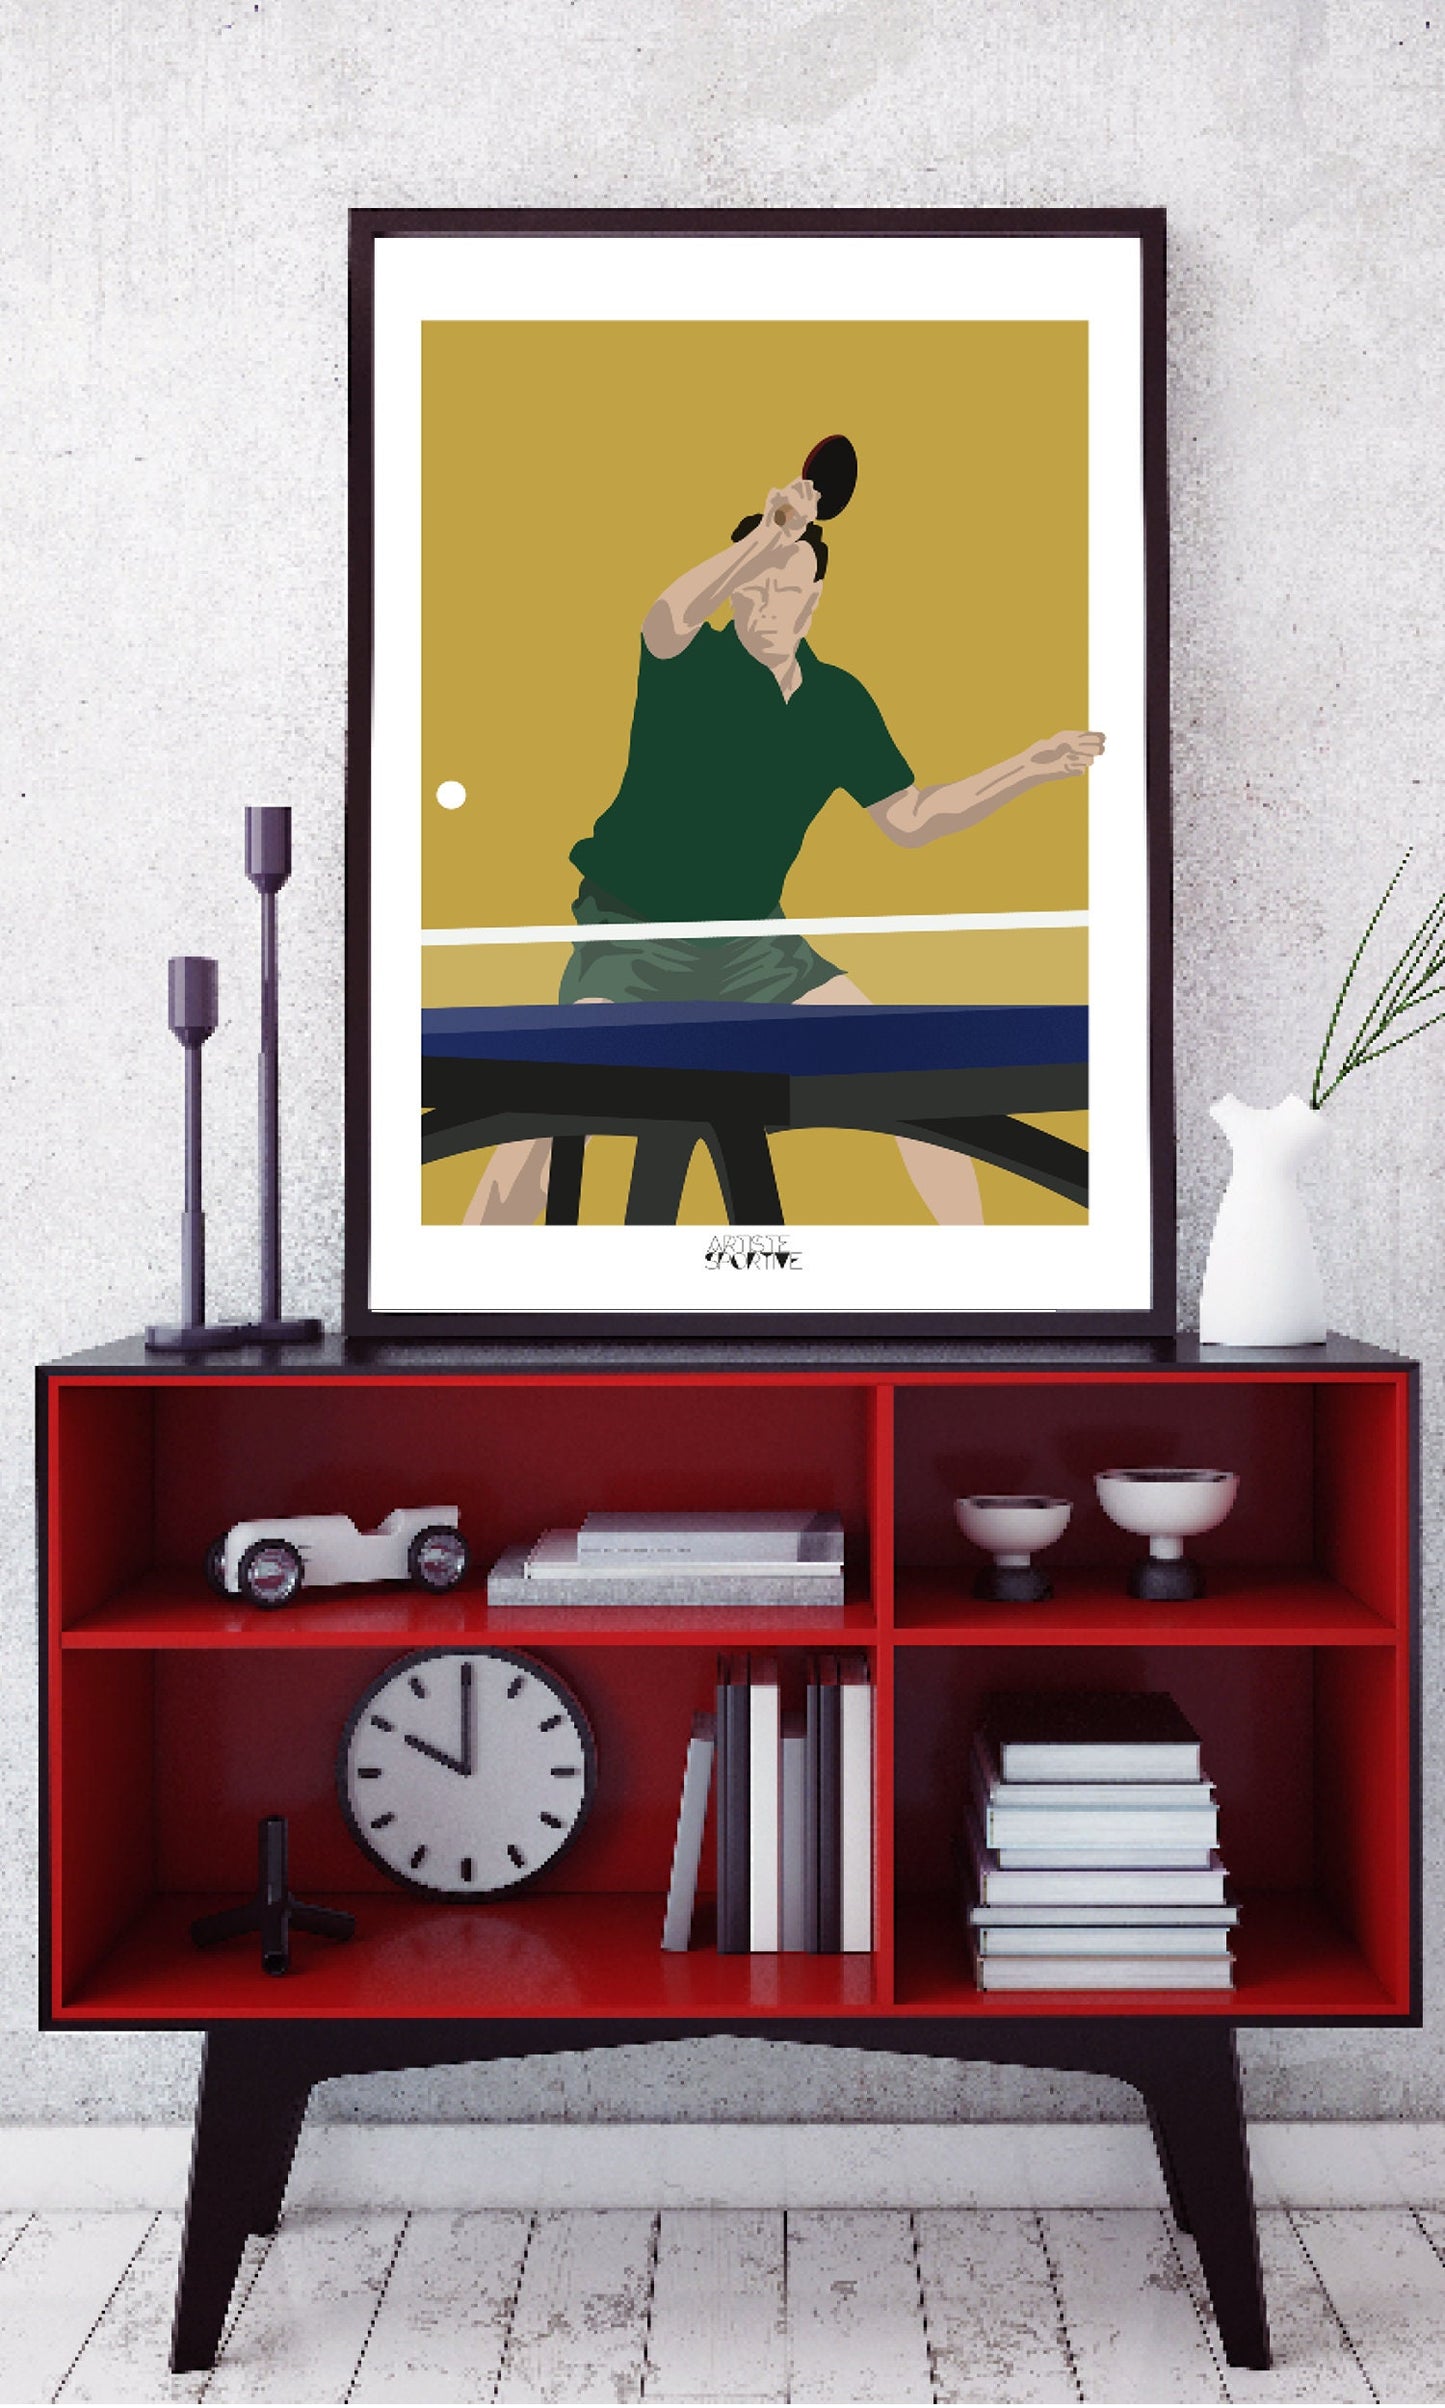 Ping-Pong-Poster „Der Tischtennisspieler“